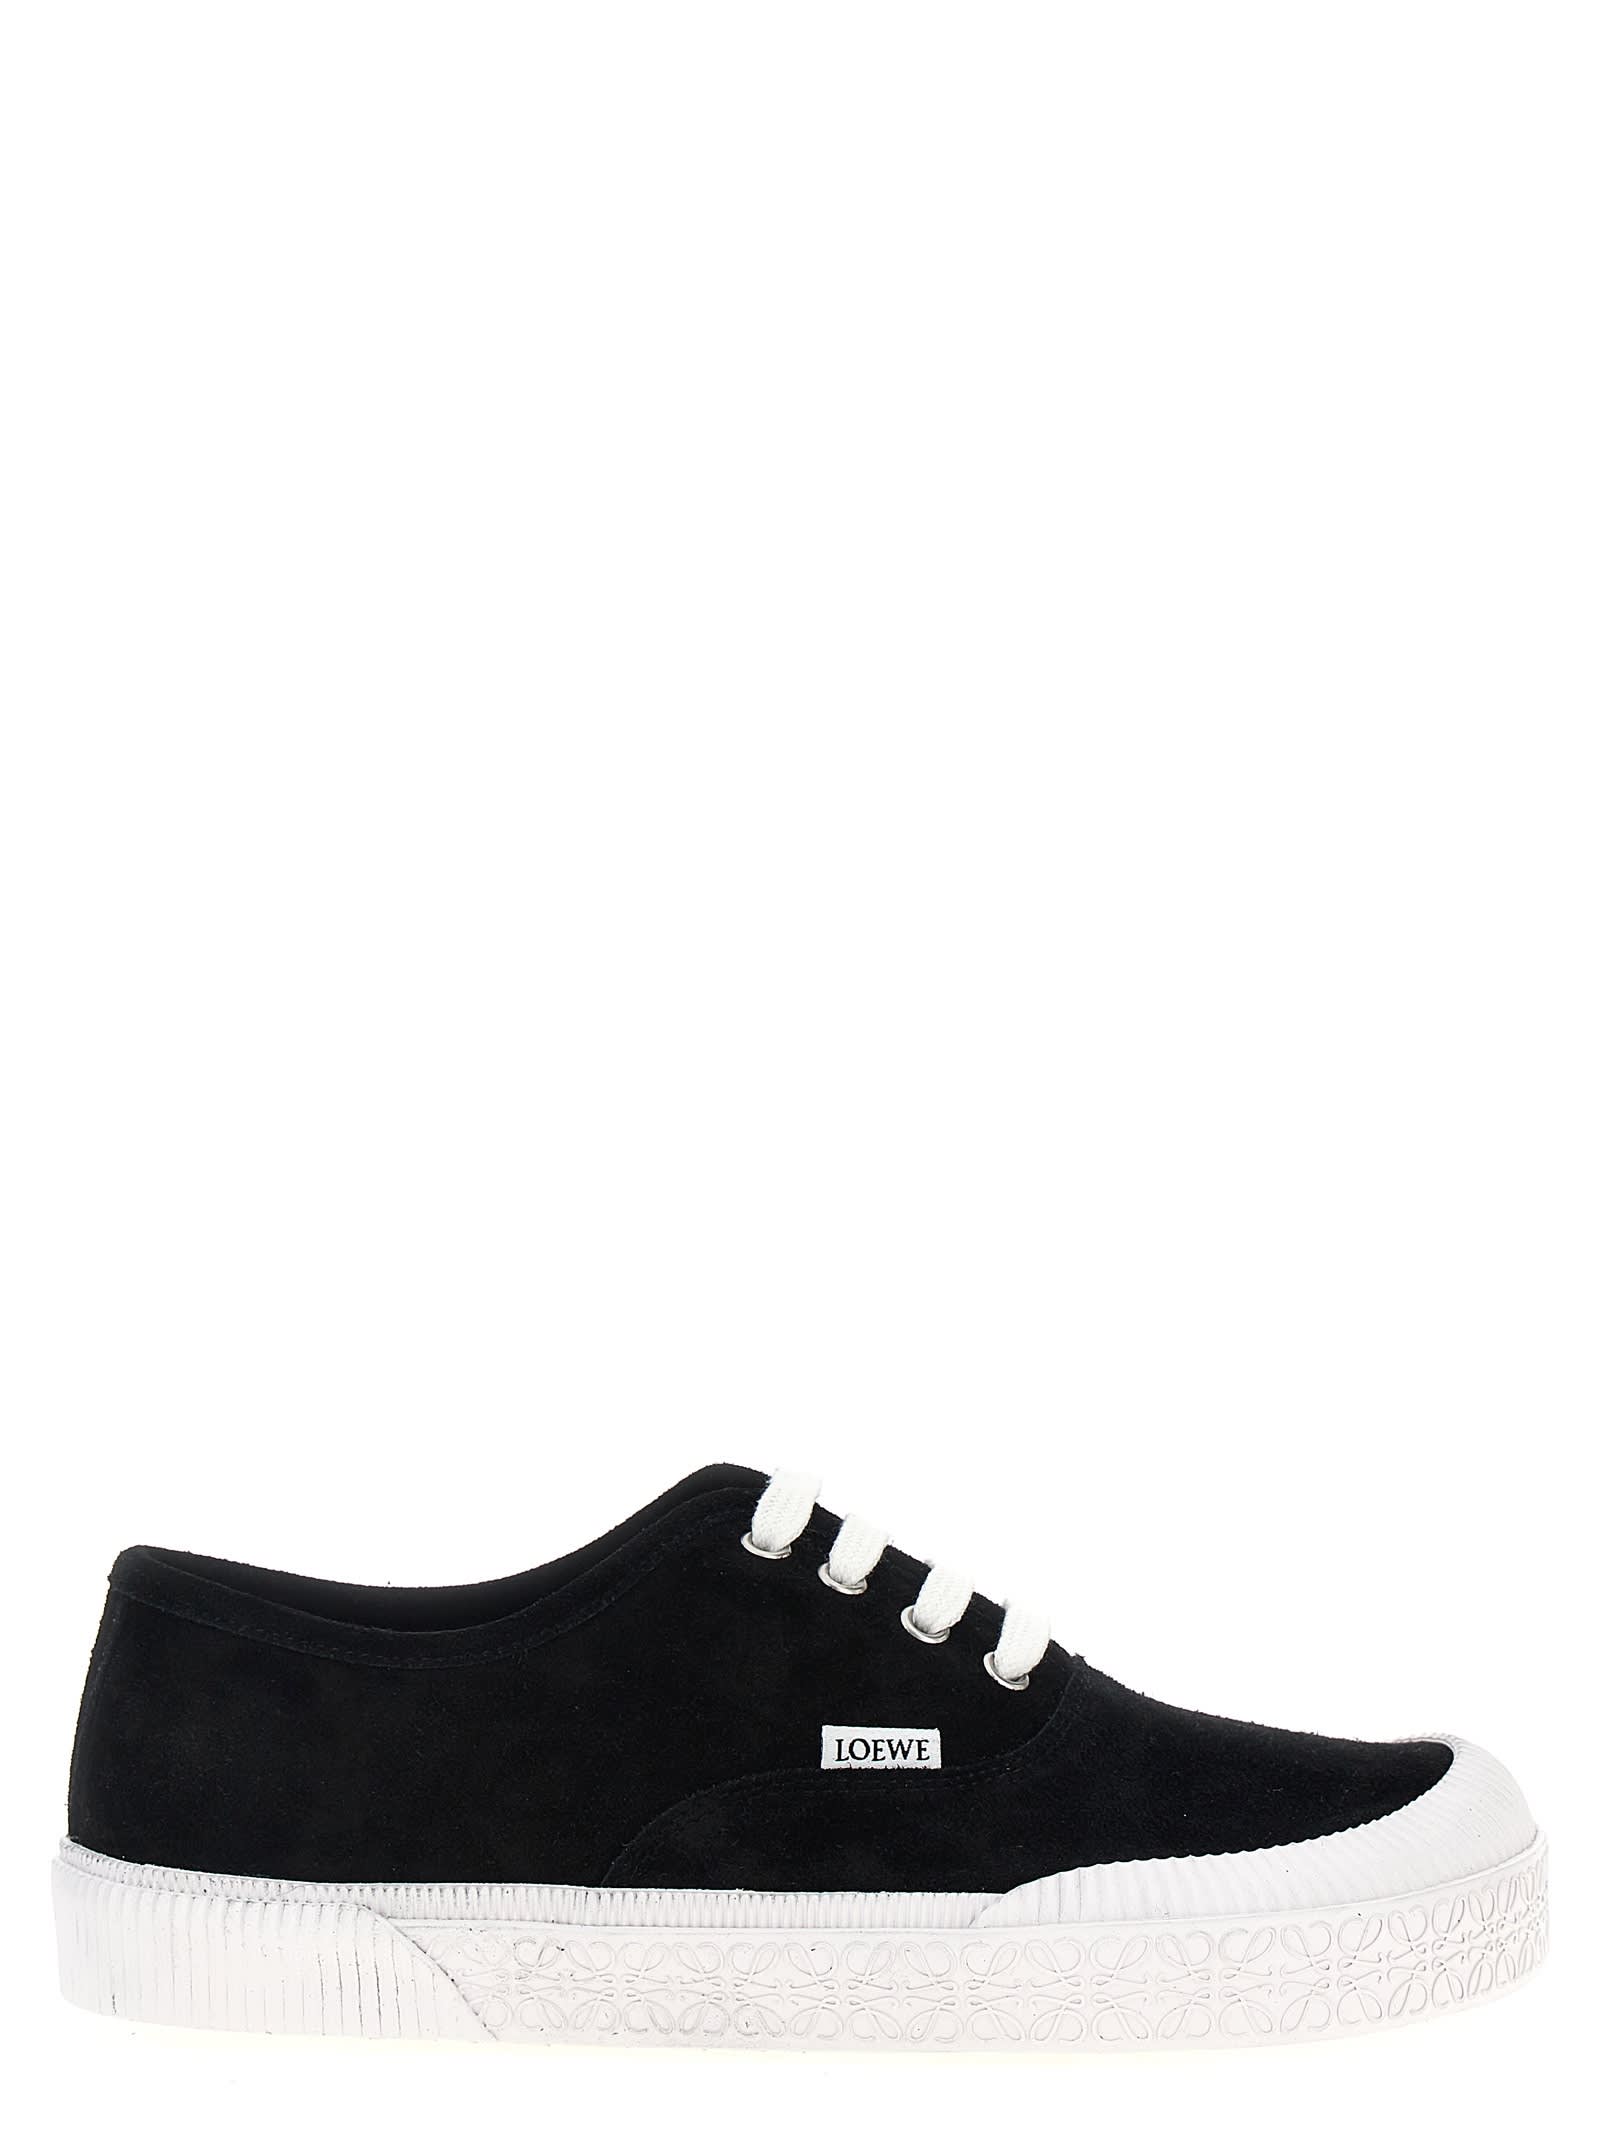 Loewe Terra Vulca Sneakers In White/black